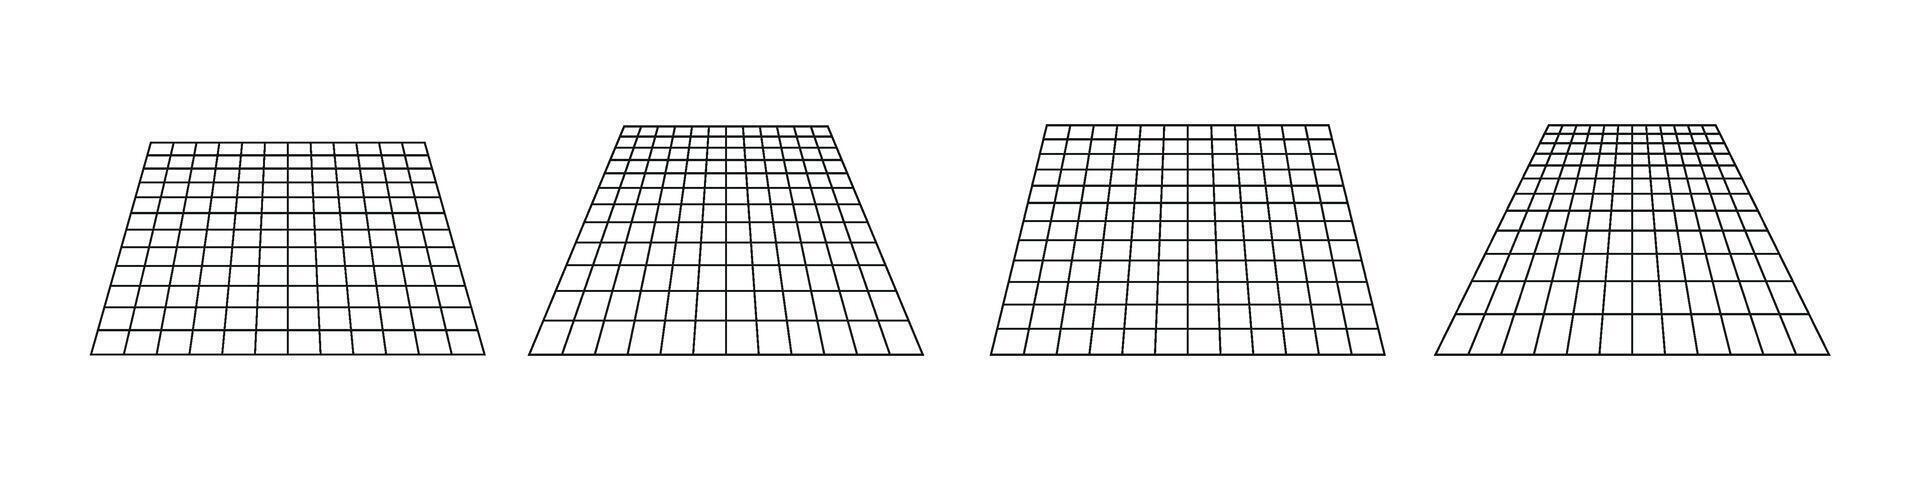 Gitter Muster Platz Linien Perspektive .Wohnung Illustration isoliert auf Weiß Hintergrund. vektor